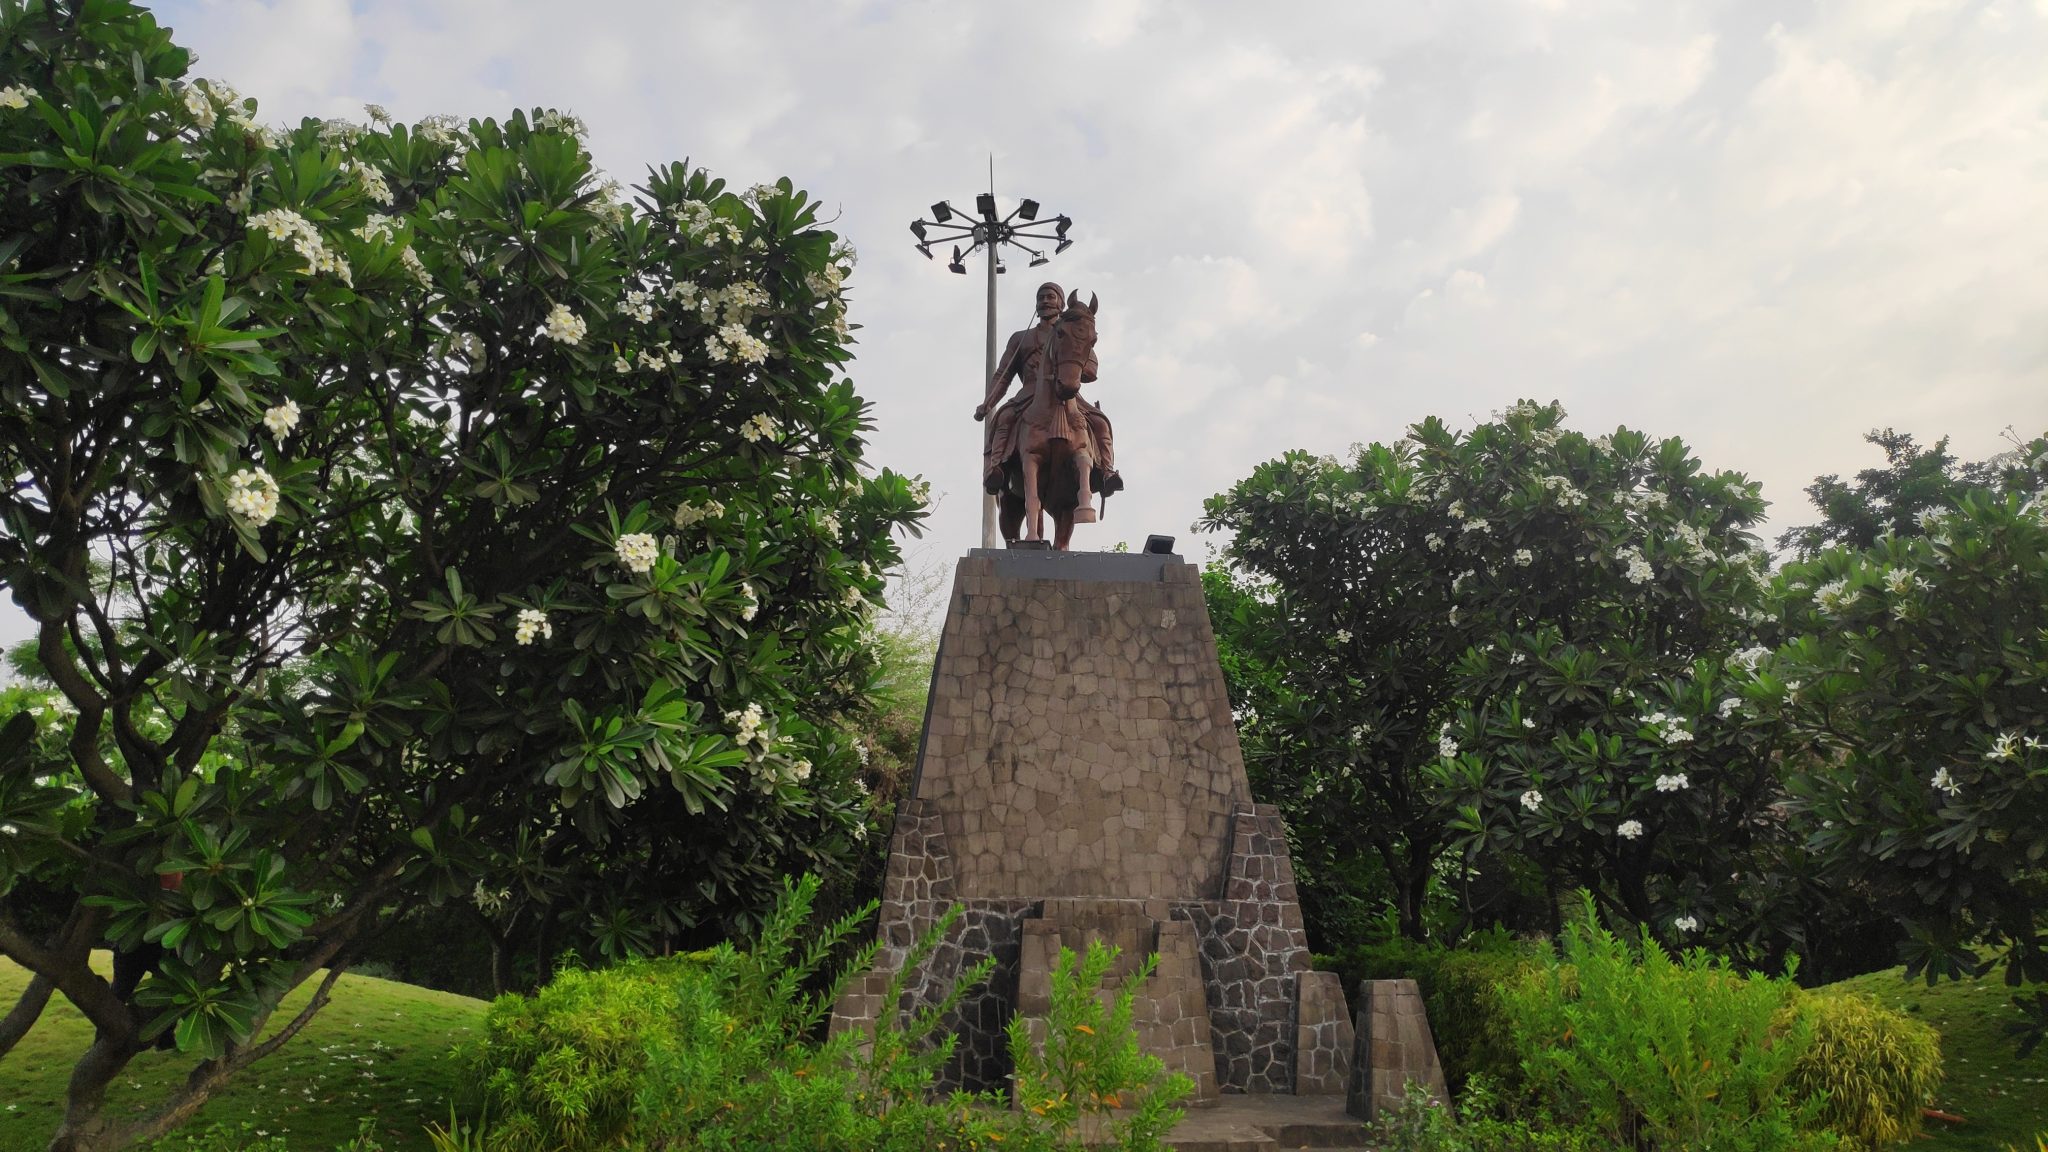 Statue of Shivaji Maharaj on Horse